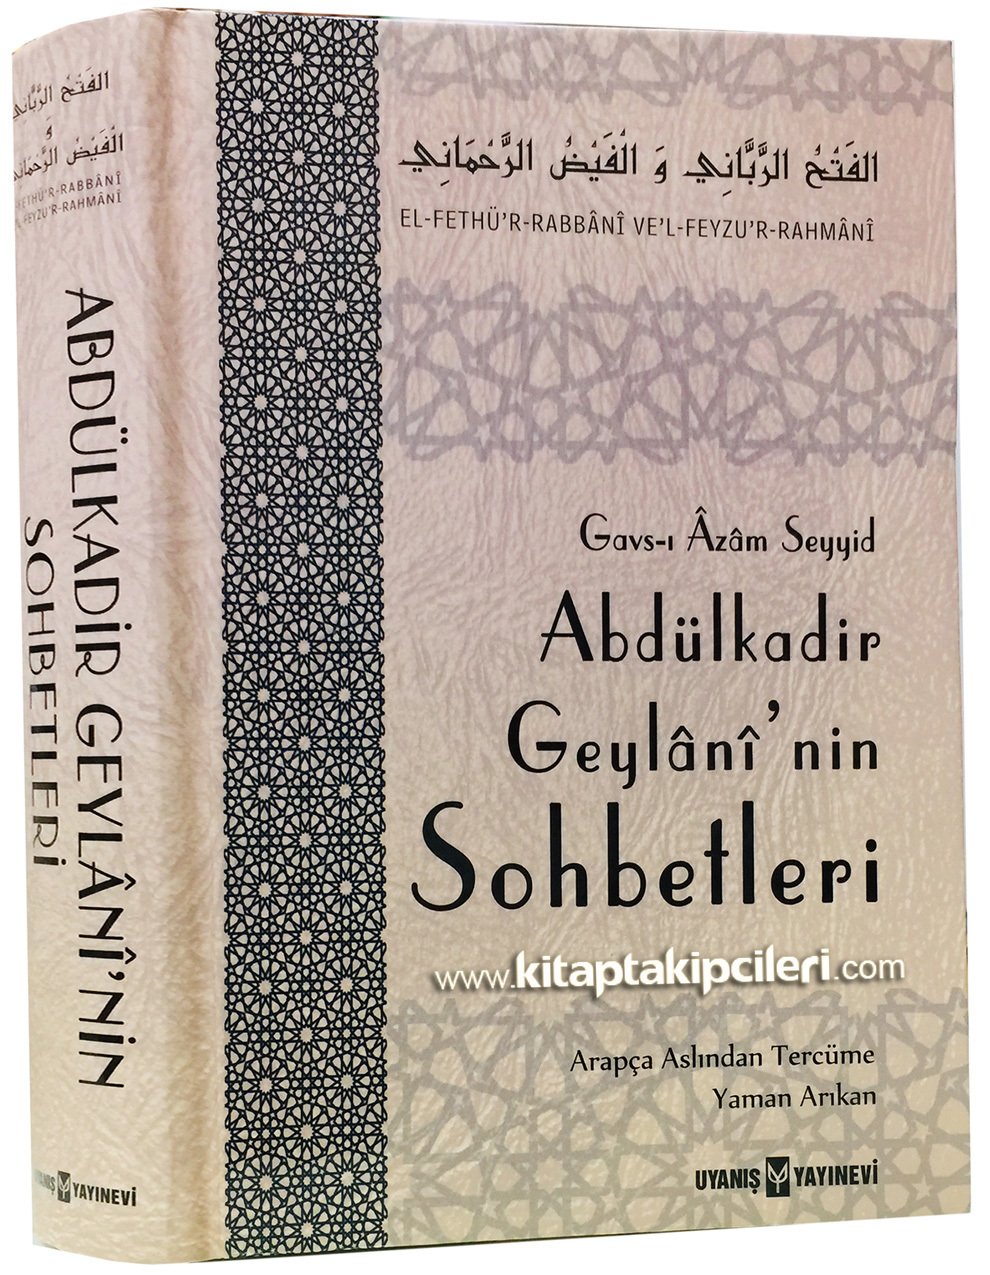 Gavsul Azam Seyyid Abdulkadir Geylani'nin Sohbetleri, El Fethur Rabbani Vel Feyzür Rahmani, Yaman Arıkan, 560 Sayfa Ciltli